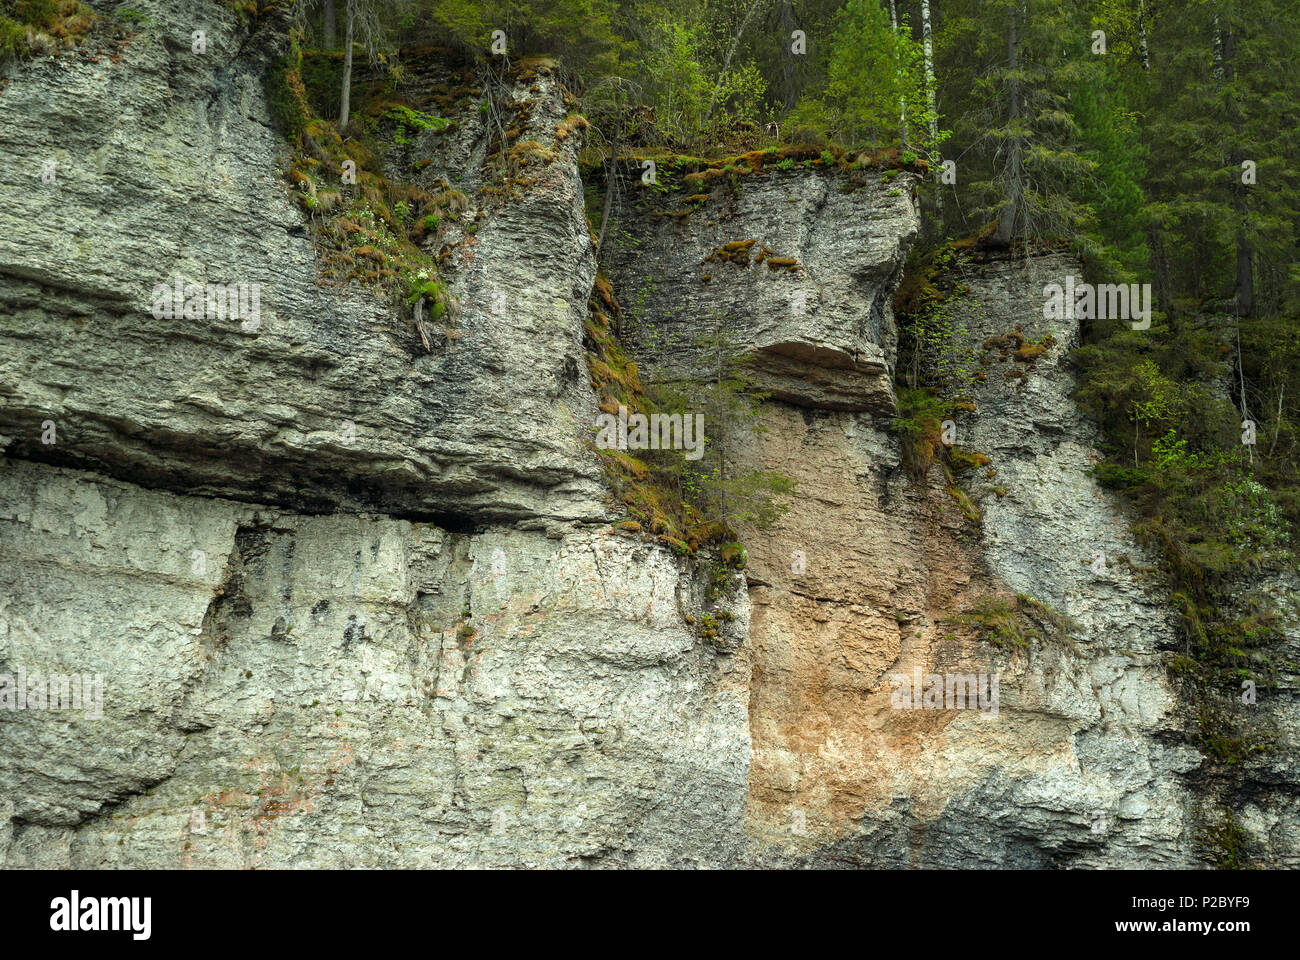 Arbolado acantilados rocosos de piedra caliza con una cifra semejante a un rostro feo Foto de stock